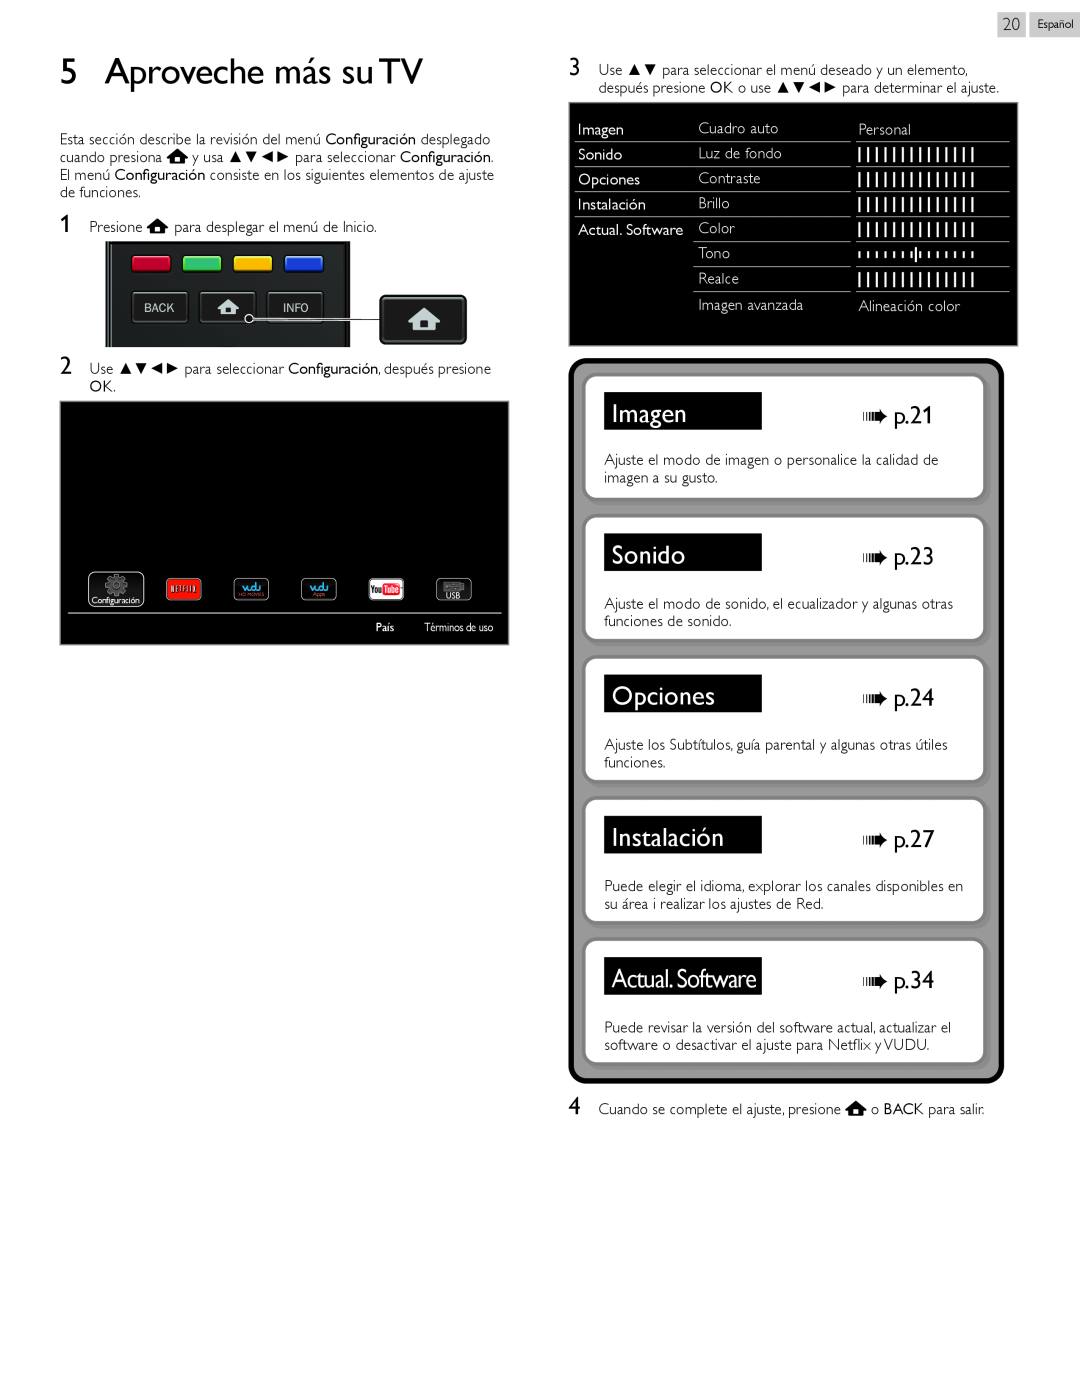 Magnavox 22MV402X Aproveche más su TV, Imagen, Sonido, Opciones, Instalación, Actual. Software, p. 21, p. 23, p. 24, p. 27 